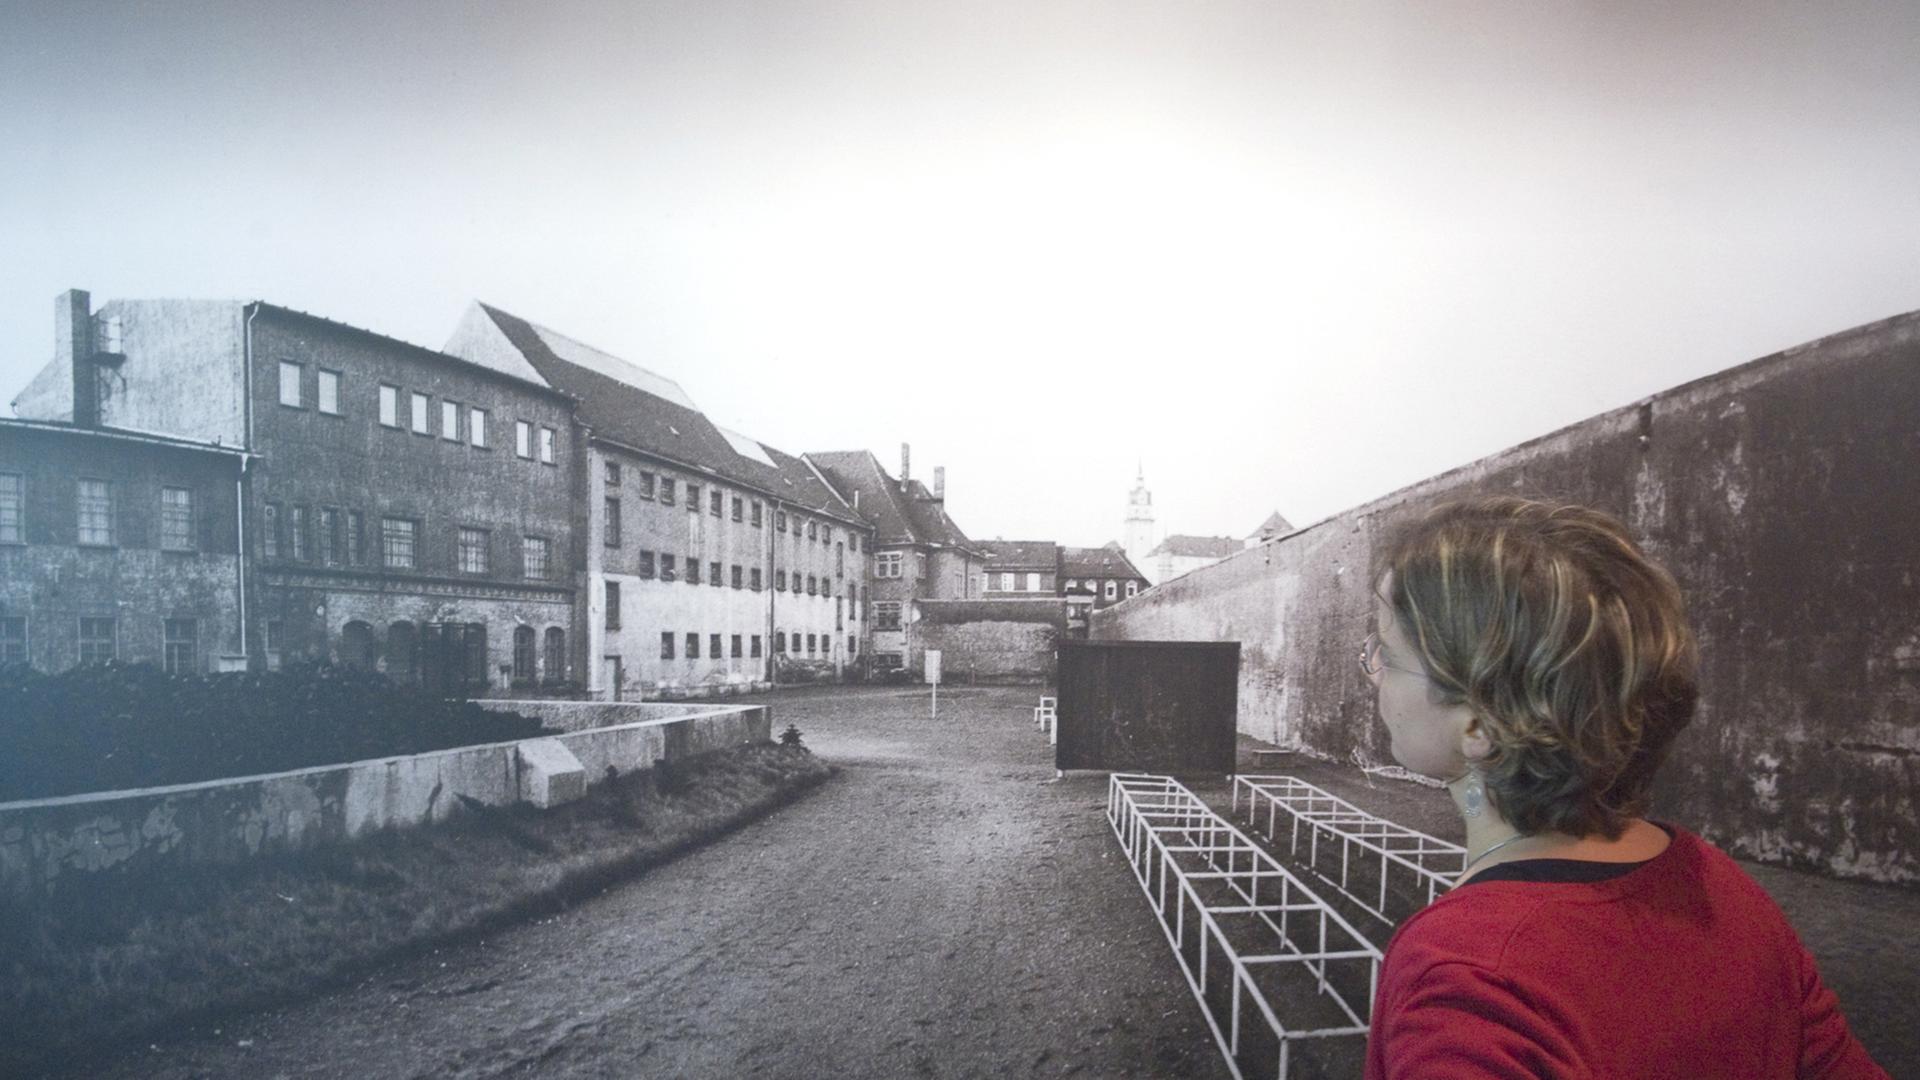 Eine Frau schaut sich am 07.11.2009 eine Fotografie des Innenhofes des ehemaligen Geschlossenen Jugendwerkhofes Torgau in der heutigen Gedenkstätte in Torgau an.